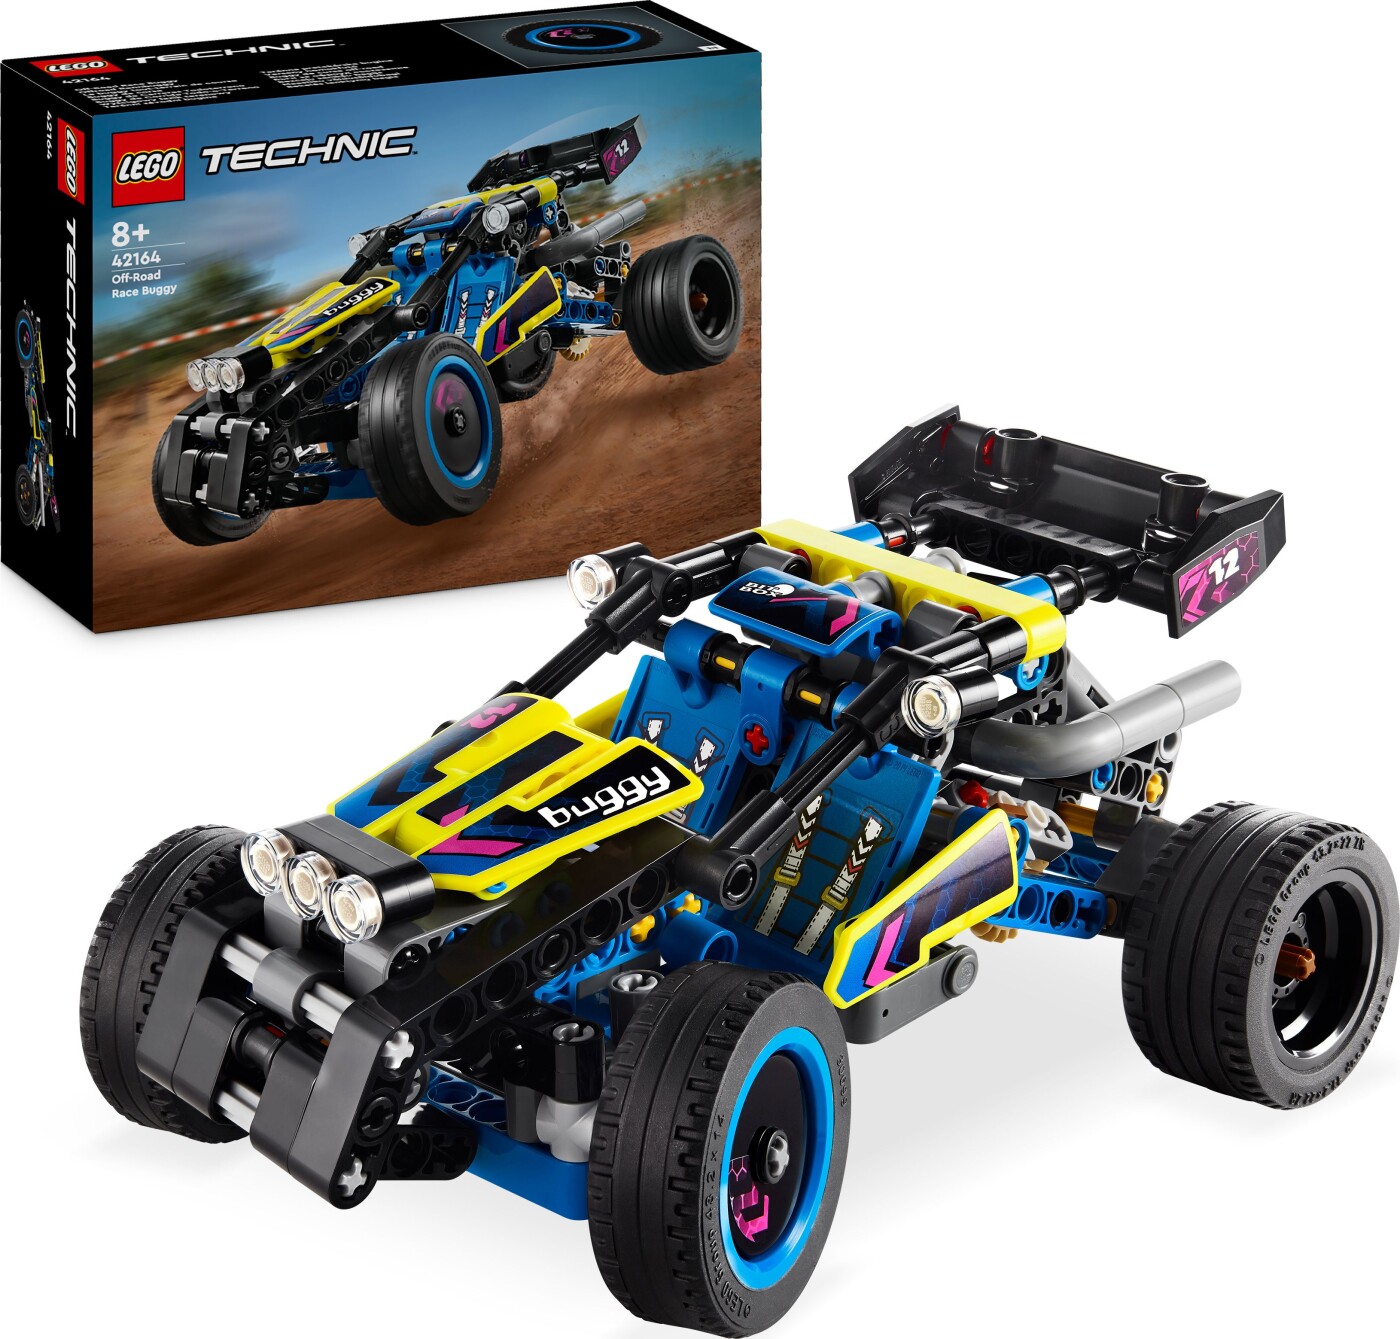 Billede af Lego Technic - Offroad-racerbuggy - 42164